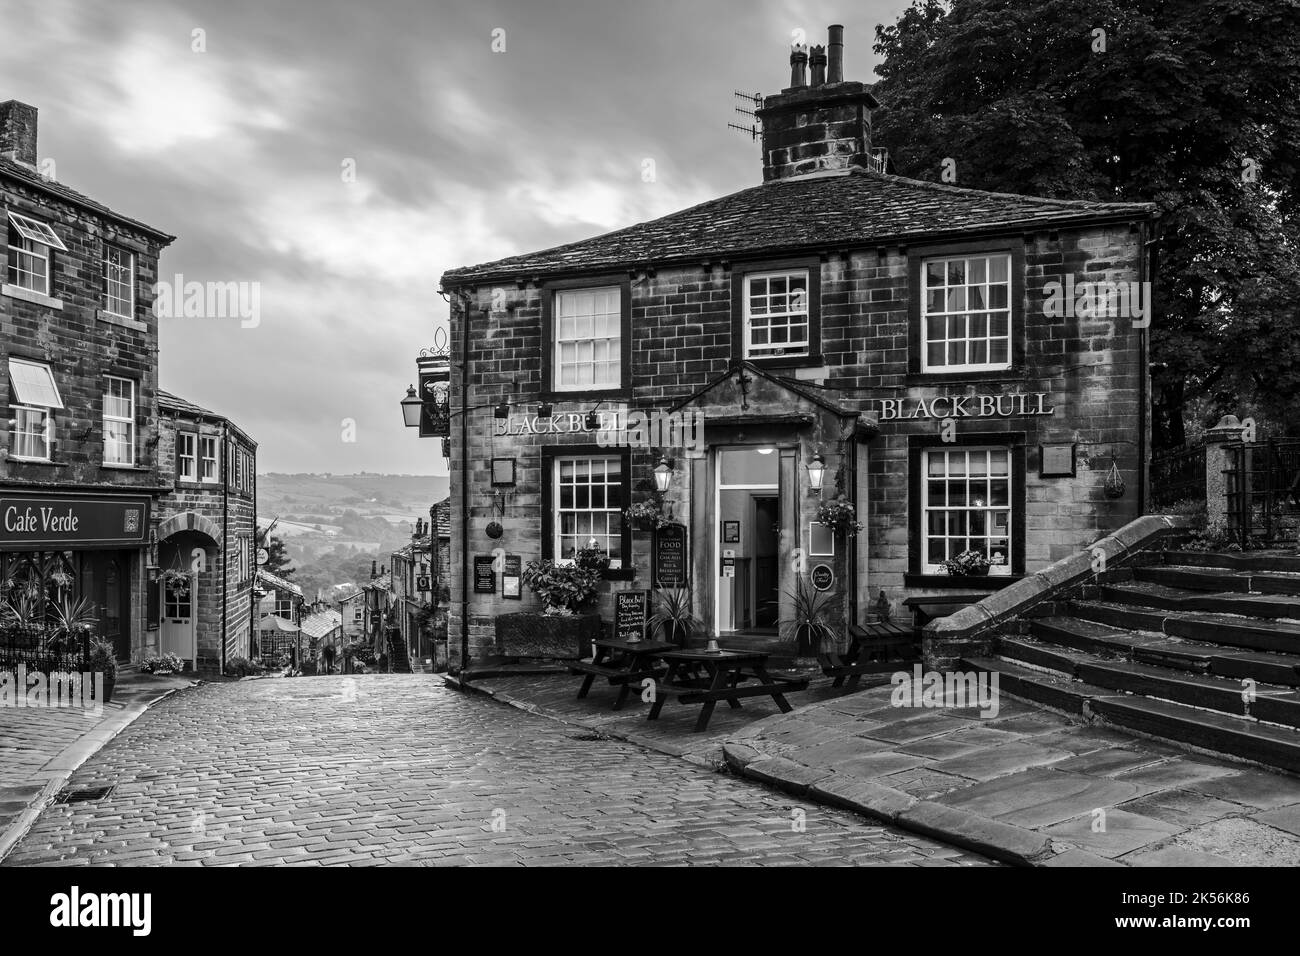 Haworth main Street (colline escarpée, vieux bâtiments, village historique des sœurs Bronte, pub de classe 2, ciel nuageux gris foncé) - West Yorkshire, Angleterre, Royaume-Uni. Banque D'Images